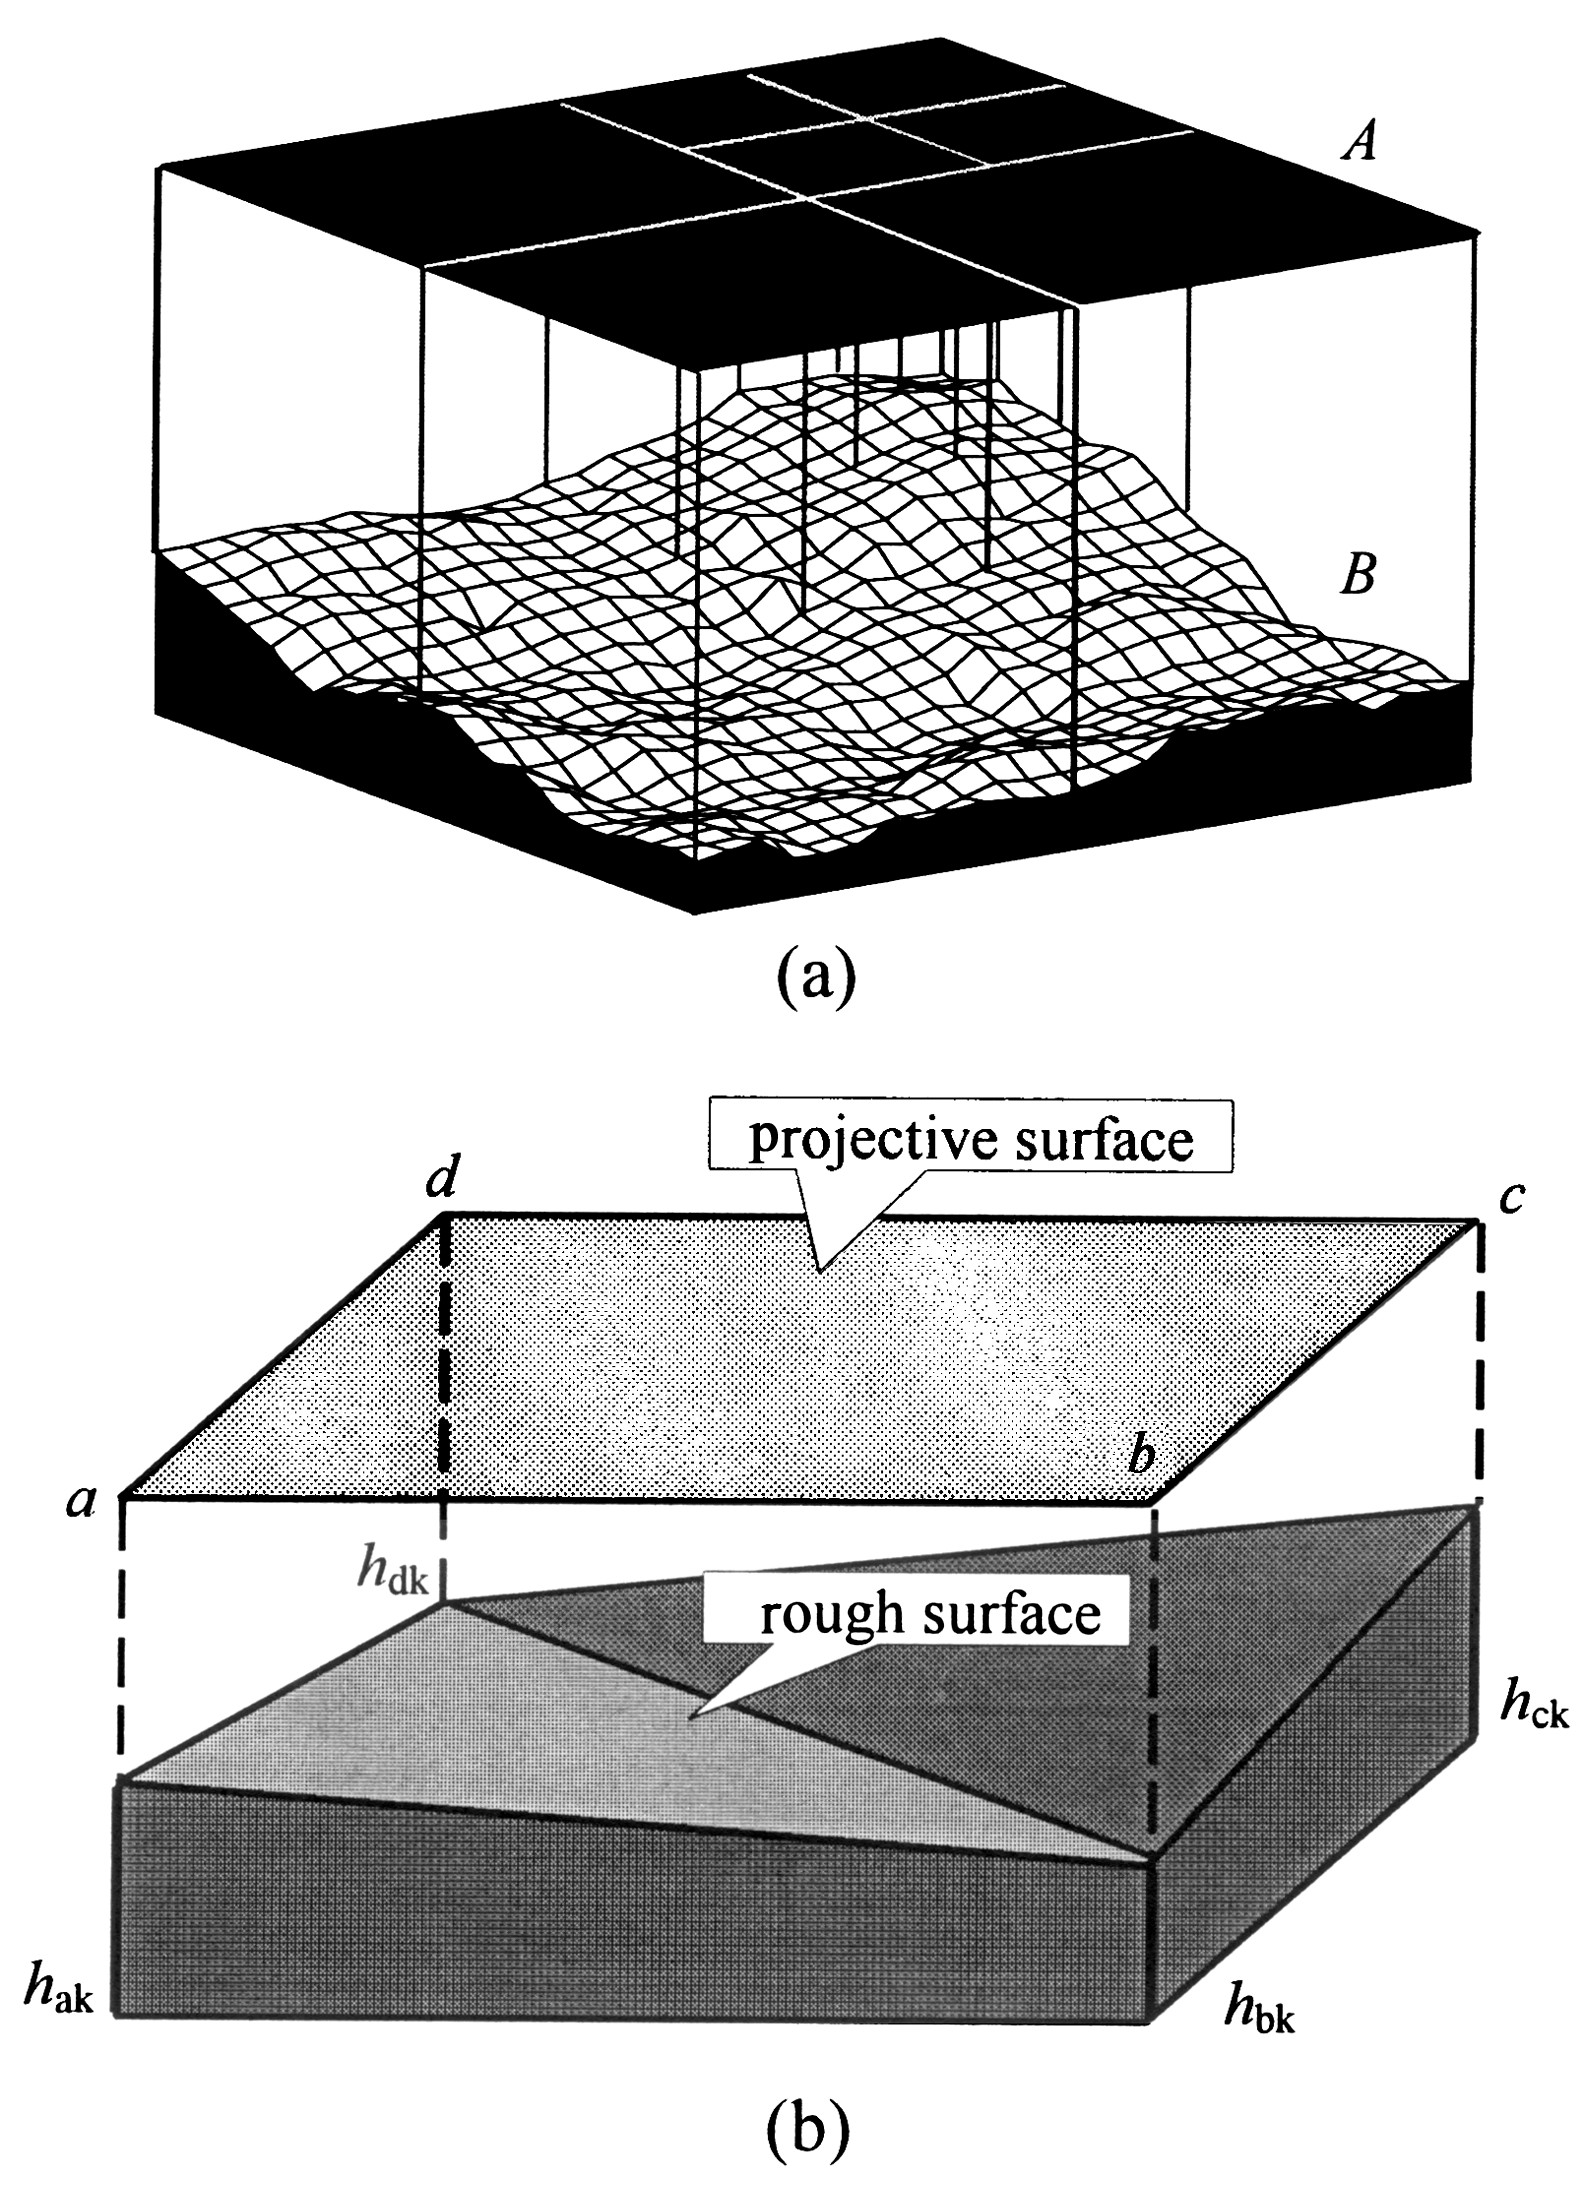 图5 投影覆盖法 (a) 和粗糙表面 面积的估算方法 (b)